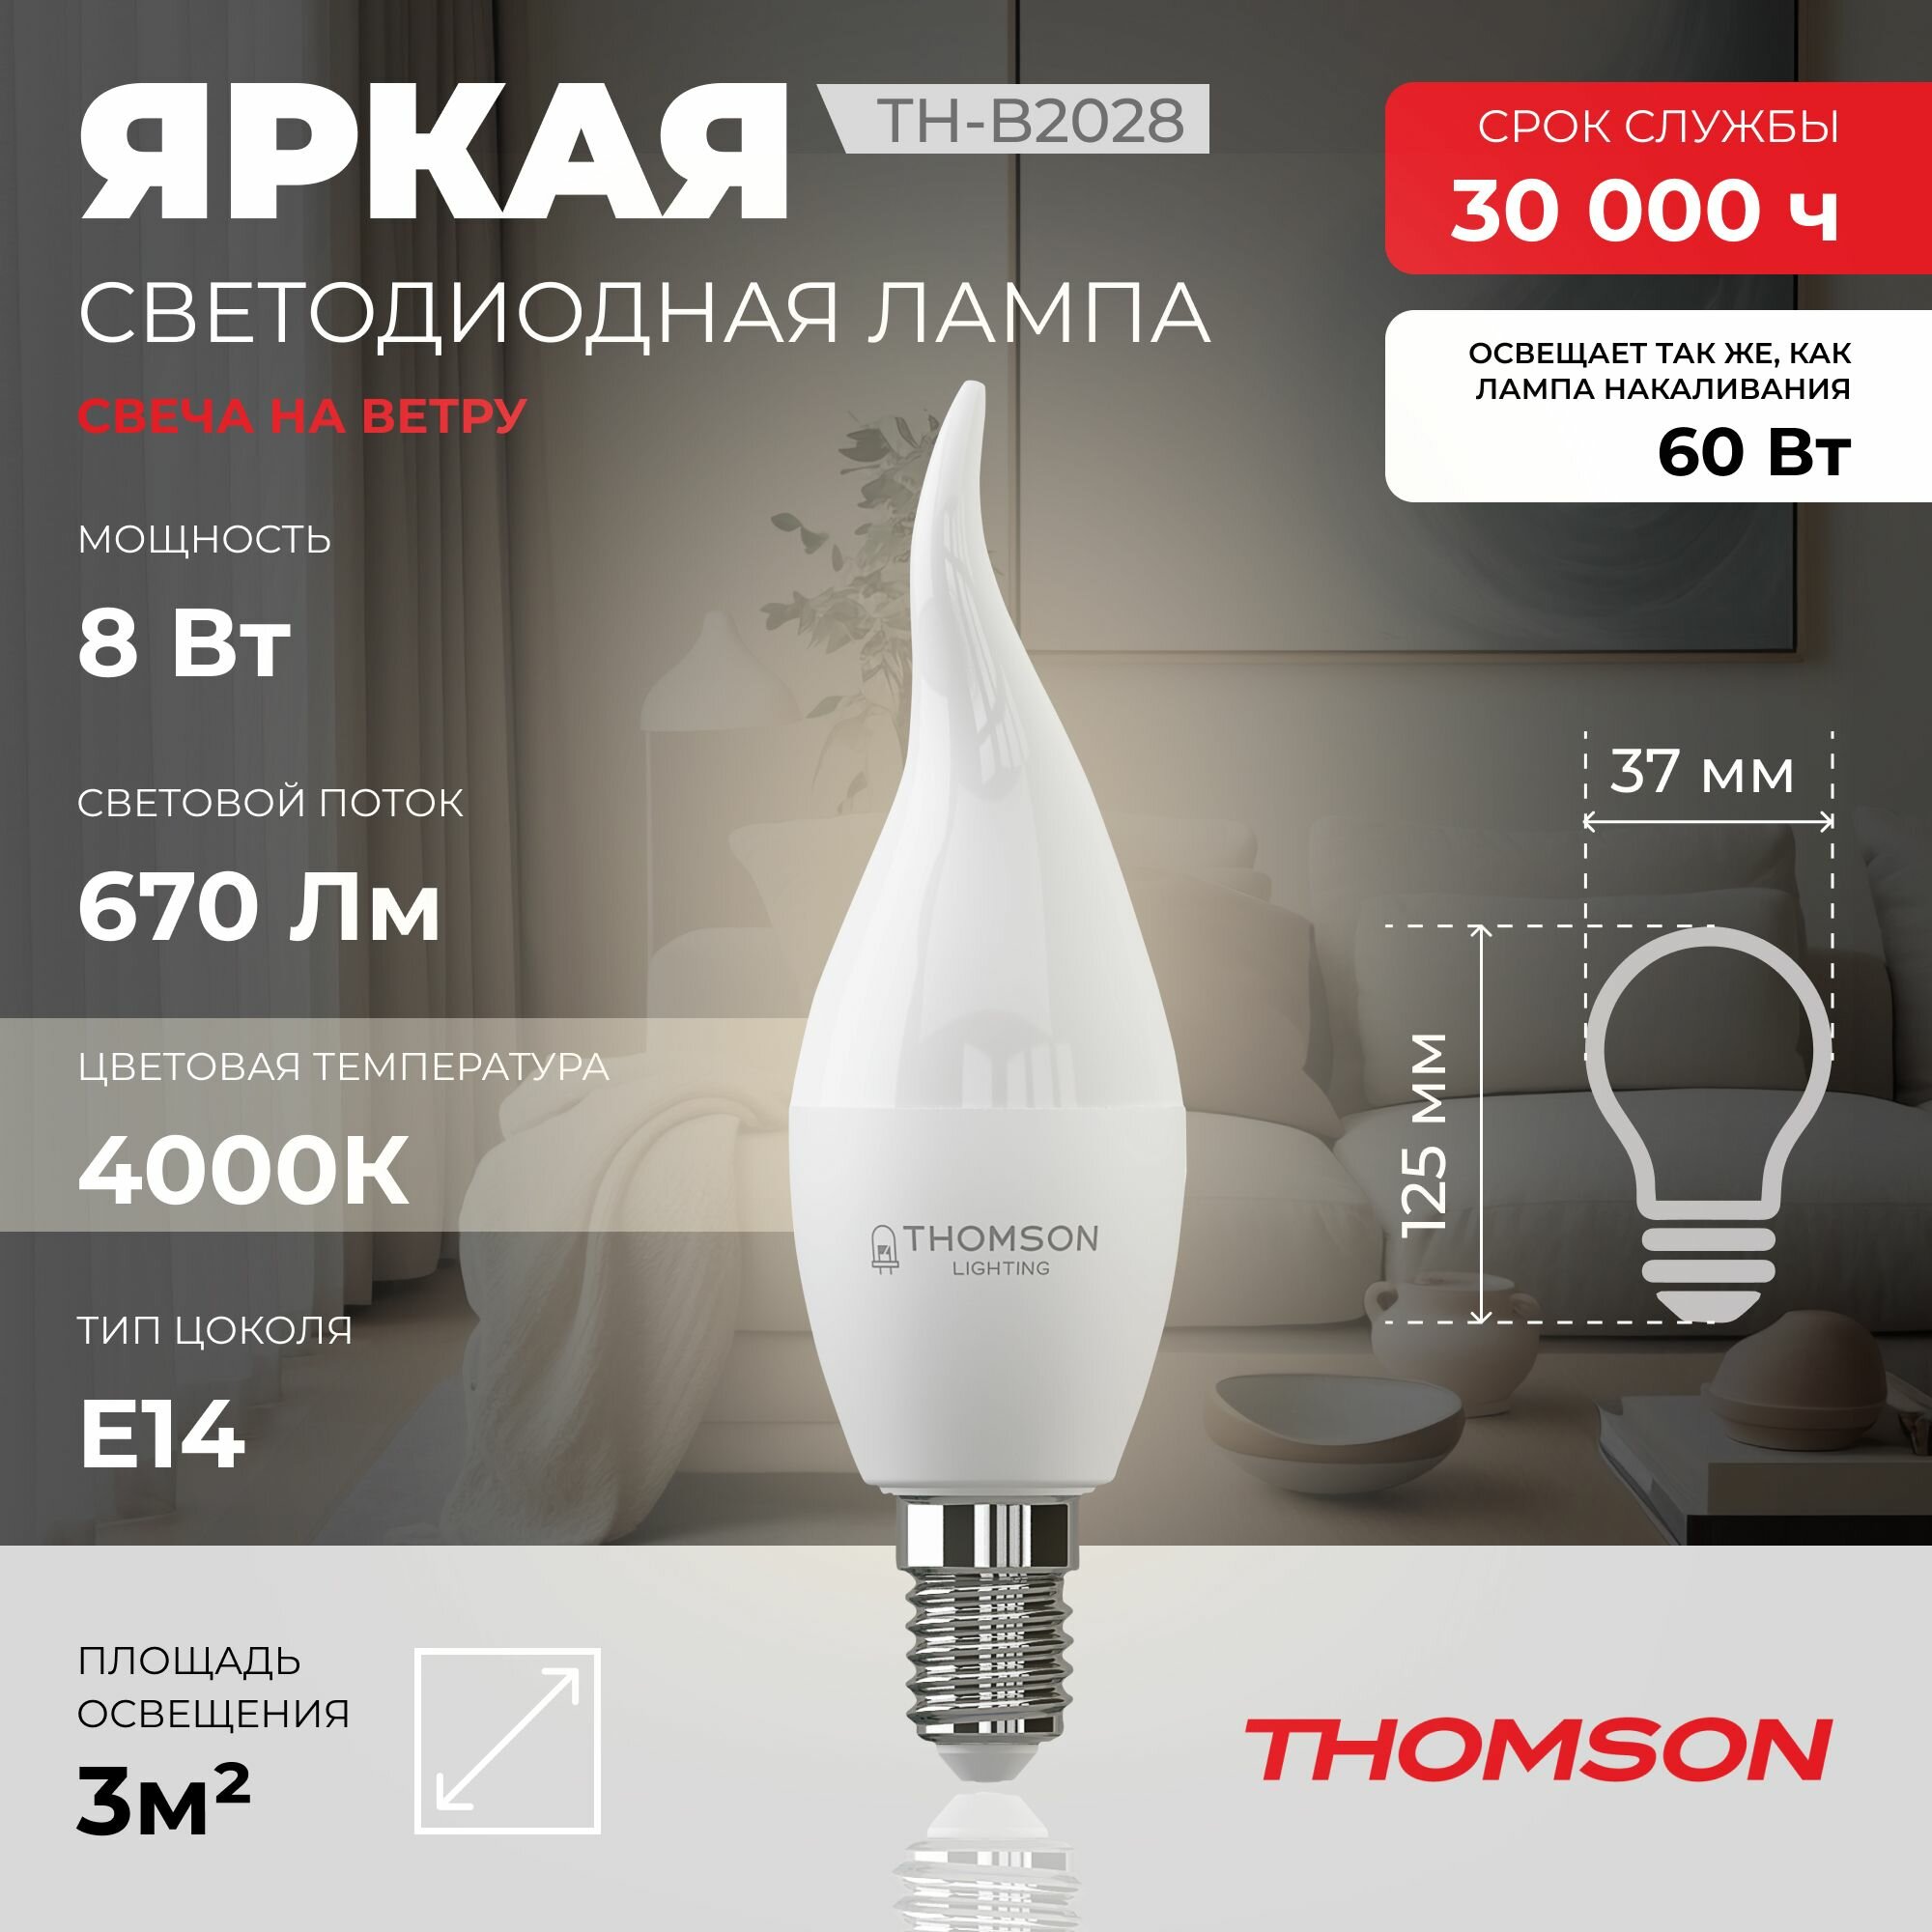 Лампочка Thomson TH-B2028 8 Вт, E14, 4000K, свеча на ветру, нейтральный белый свет